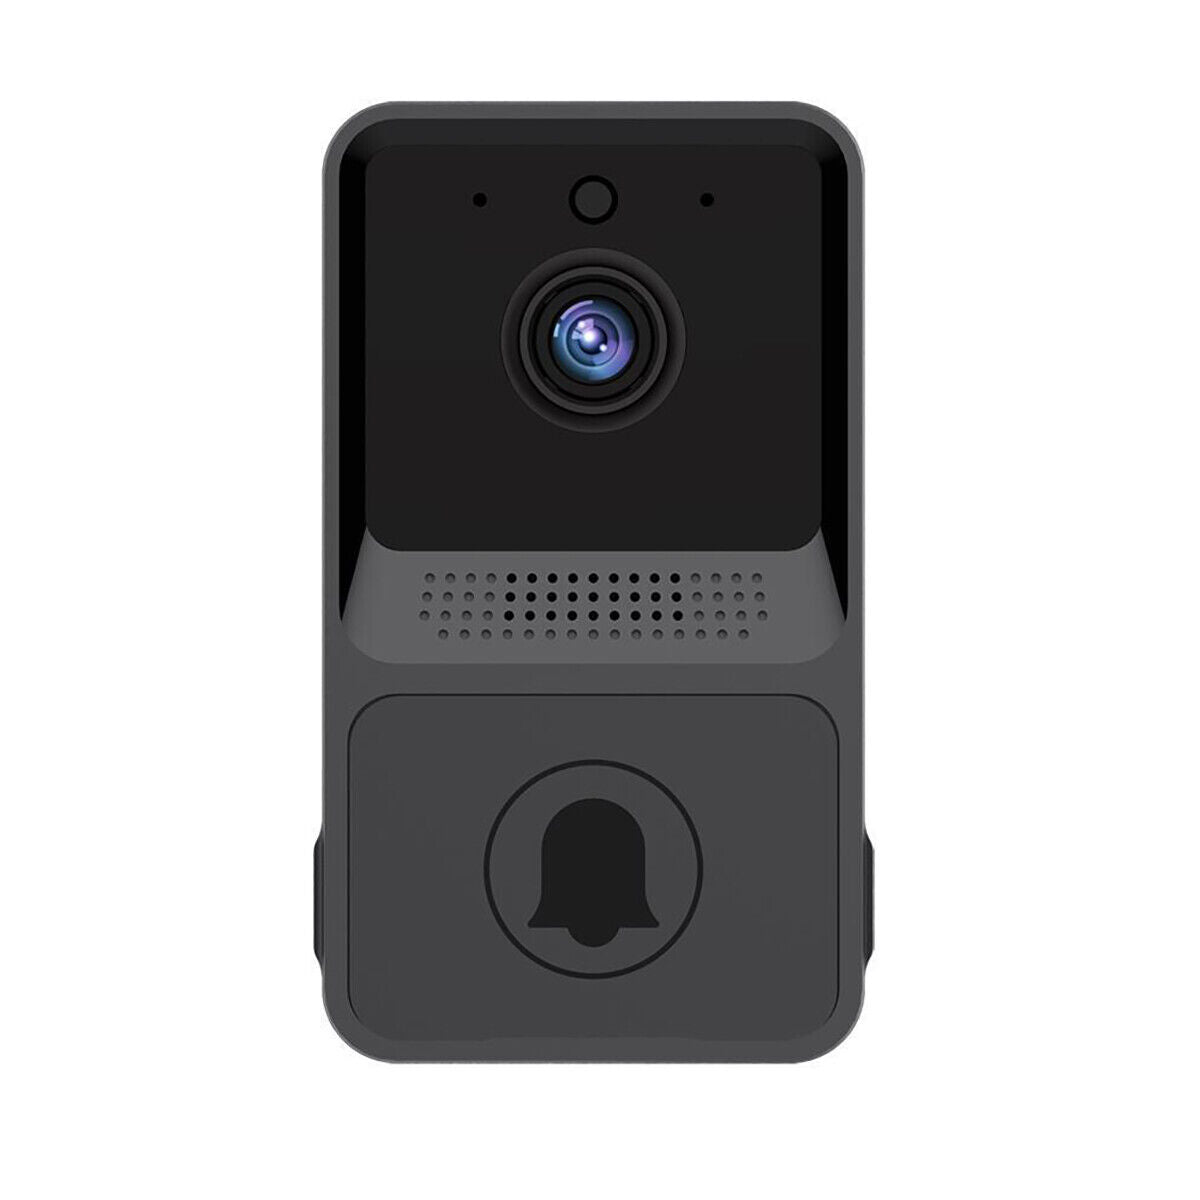 Smart Wireless WiFi Video Doorbell Phone Camera Door Bell Ring Intercom Security